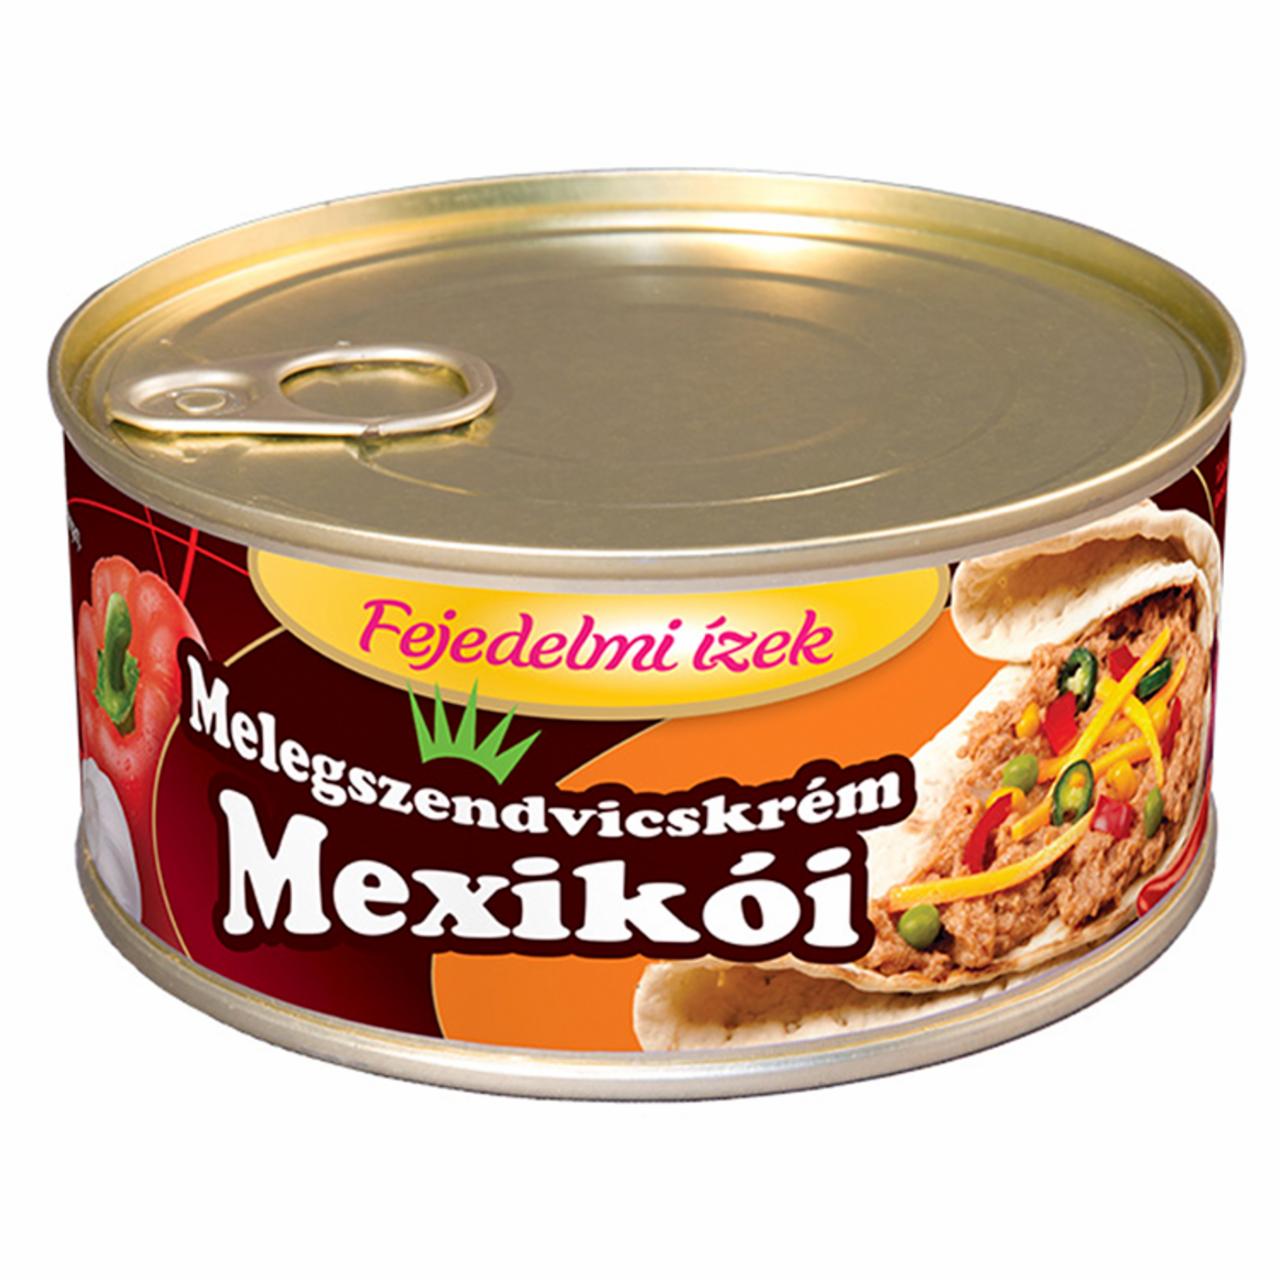 Képek - Fejedelmi Ízek mexikói melegszendvicskrém 300 g